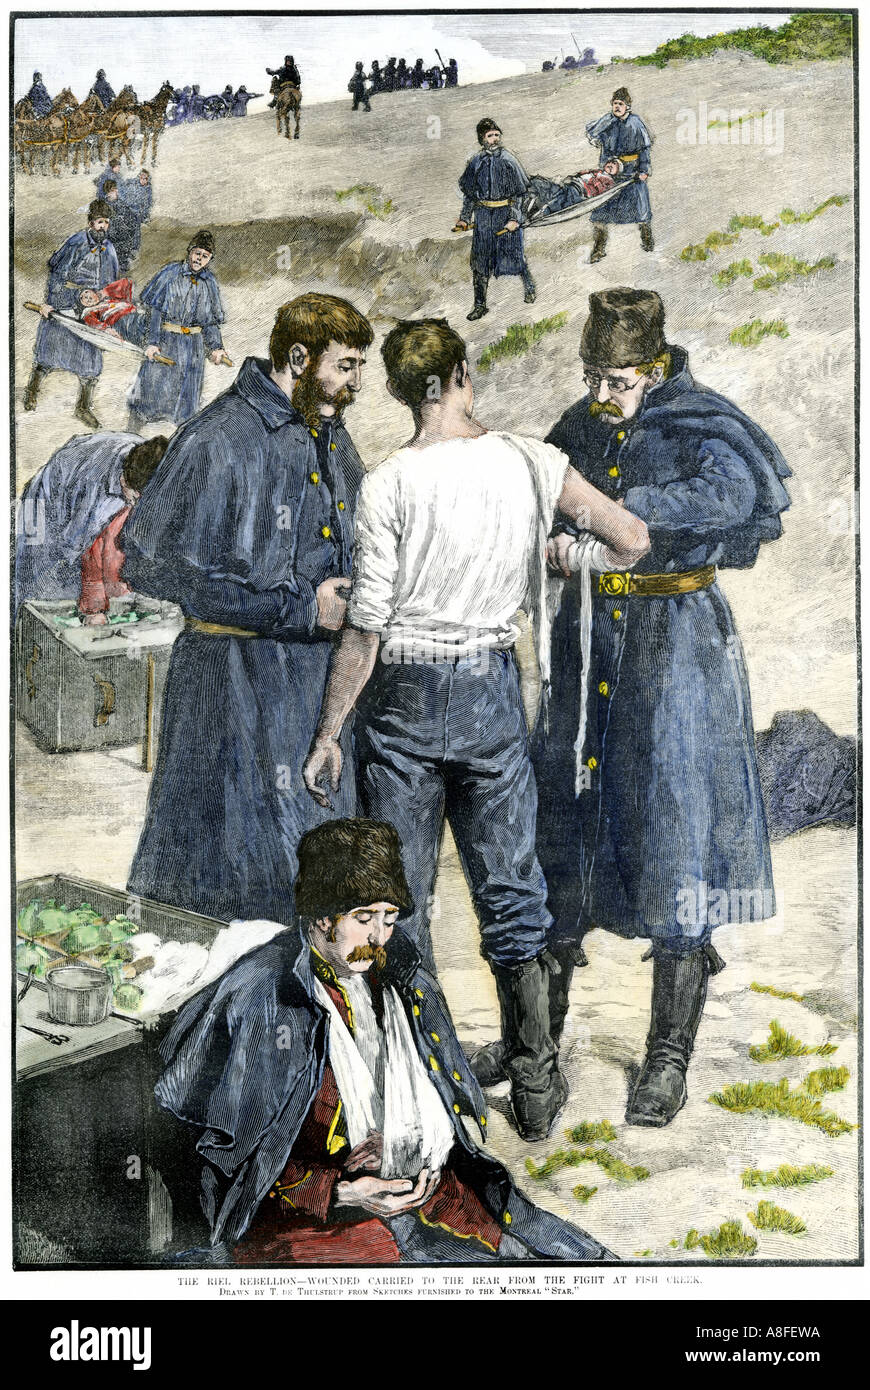 Rébellion de Riel gendarmes canadiens blessés transportés à partir de la bataille de Fish Creek en 1885. À la main, gravure sur bois Banque D'Images